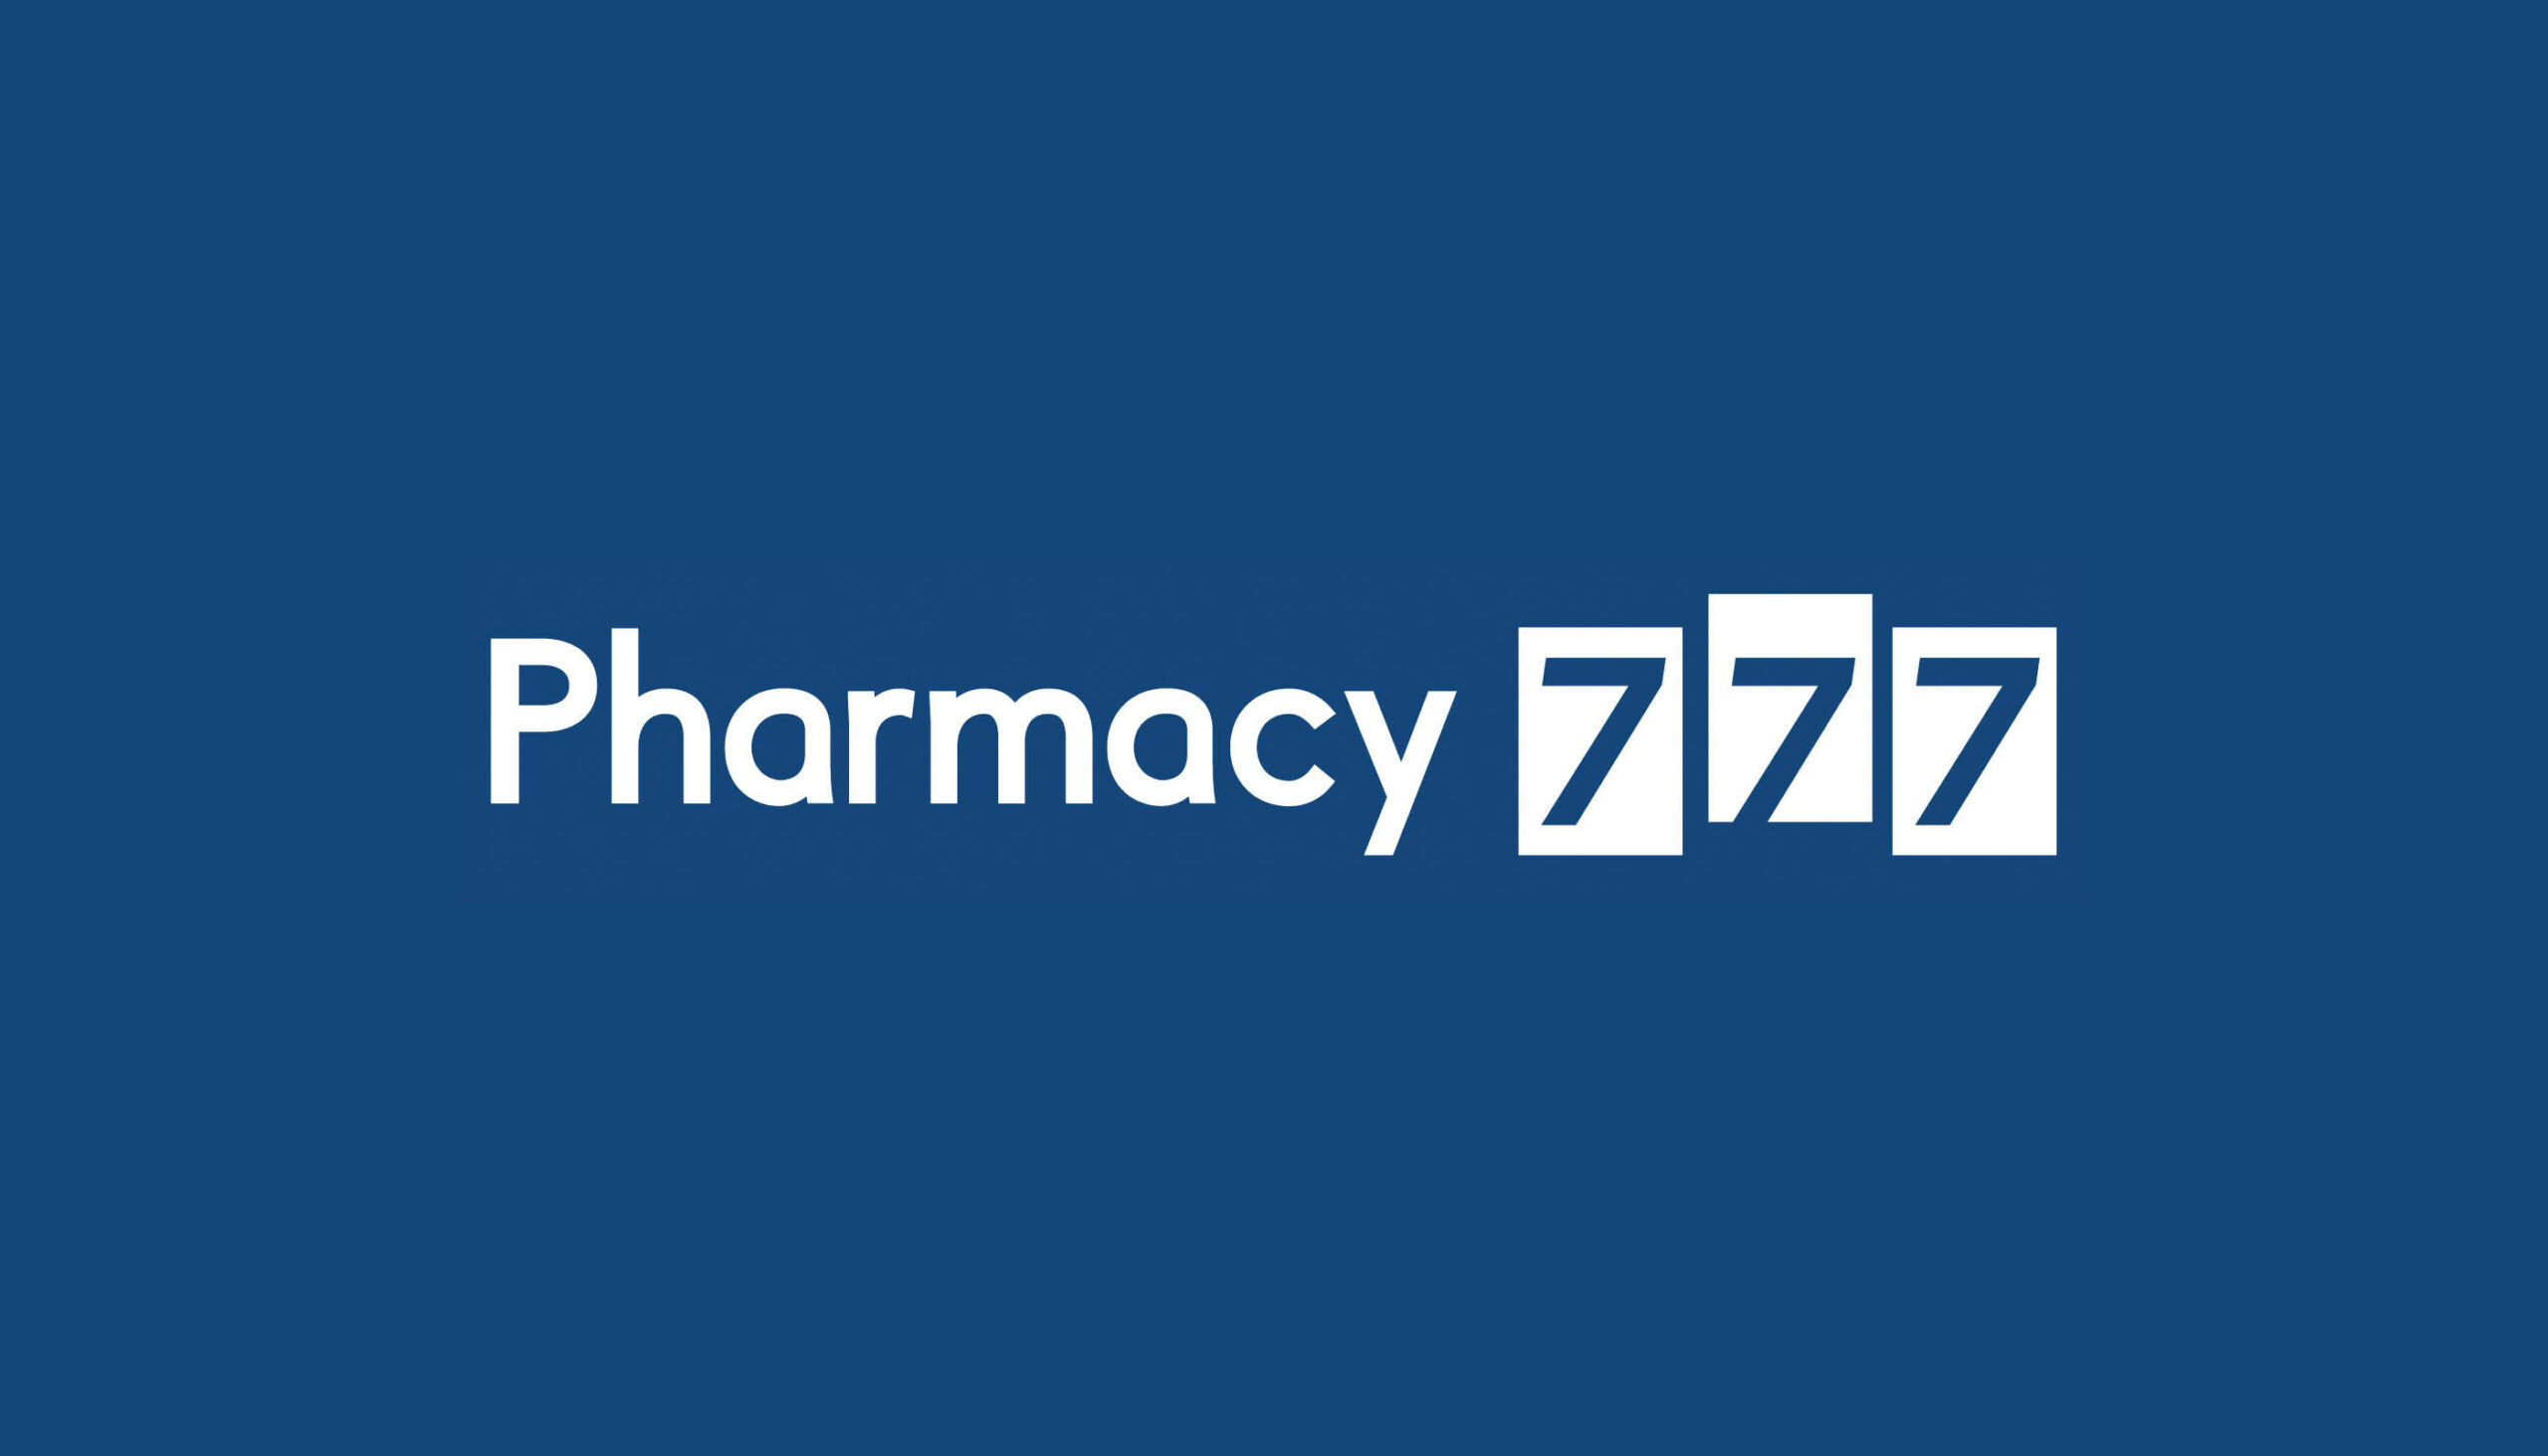 Pharmacy 777 Logo design by Taryn Langlois whilst employed at Bonser Design